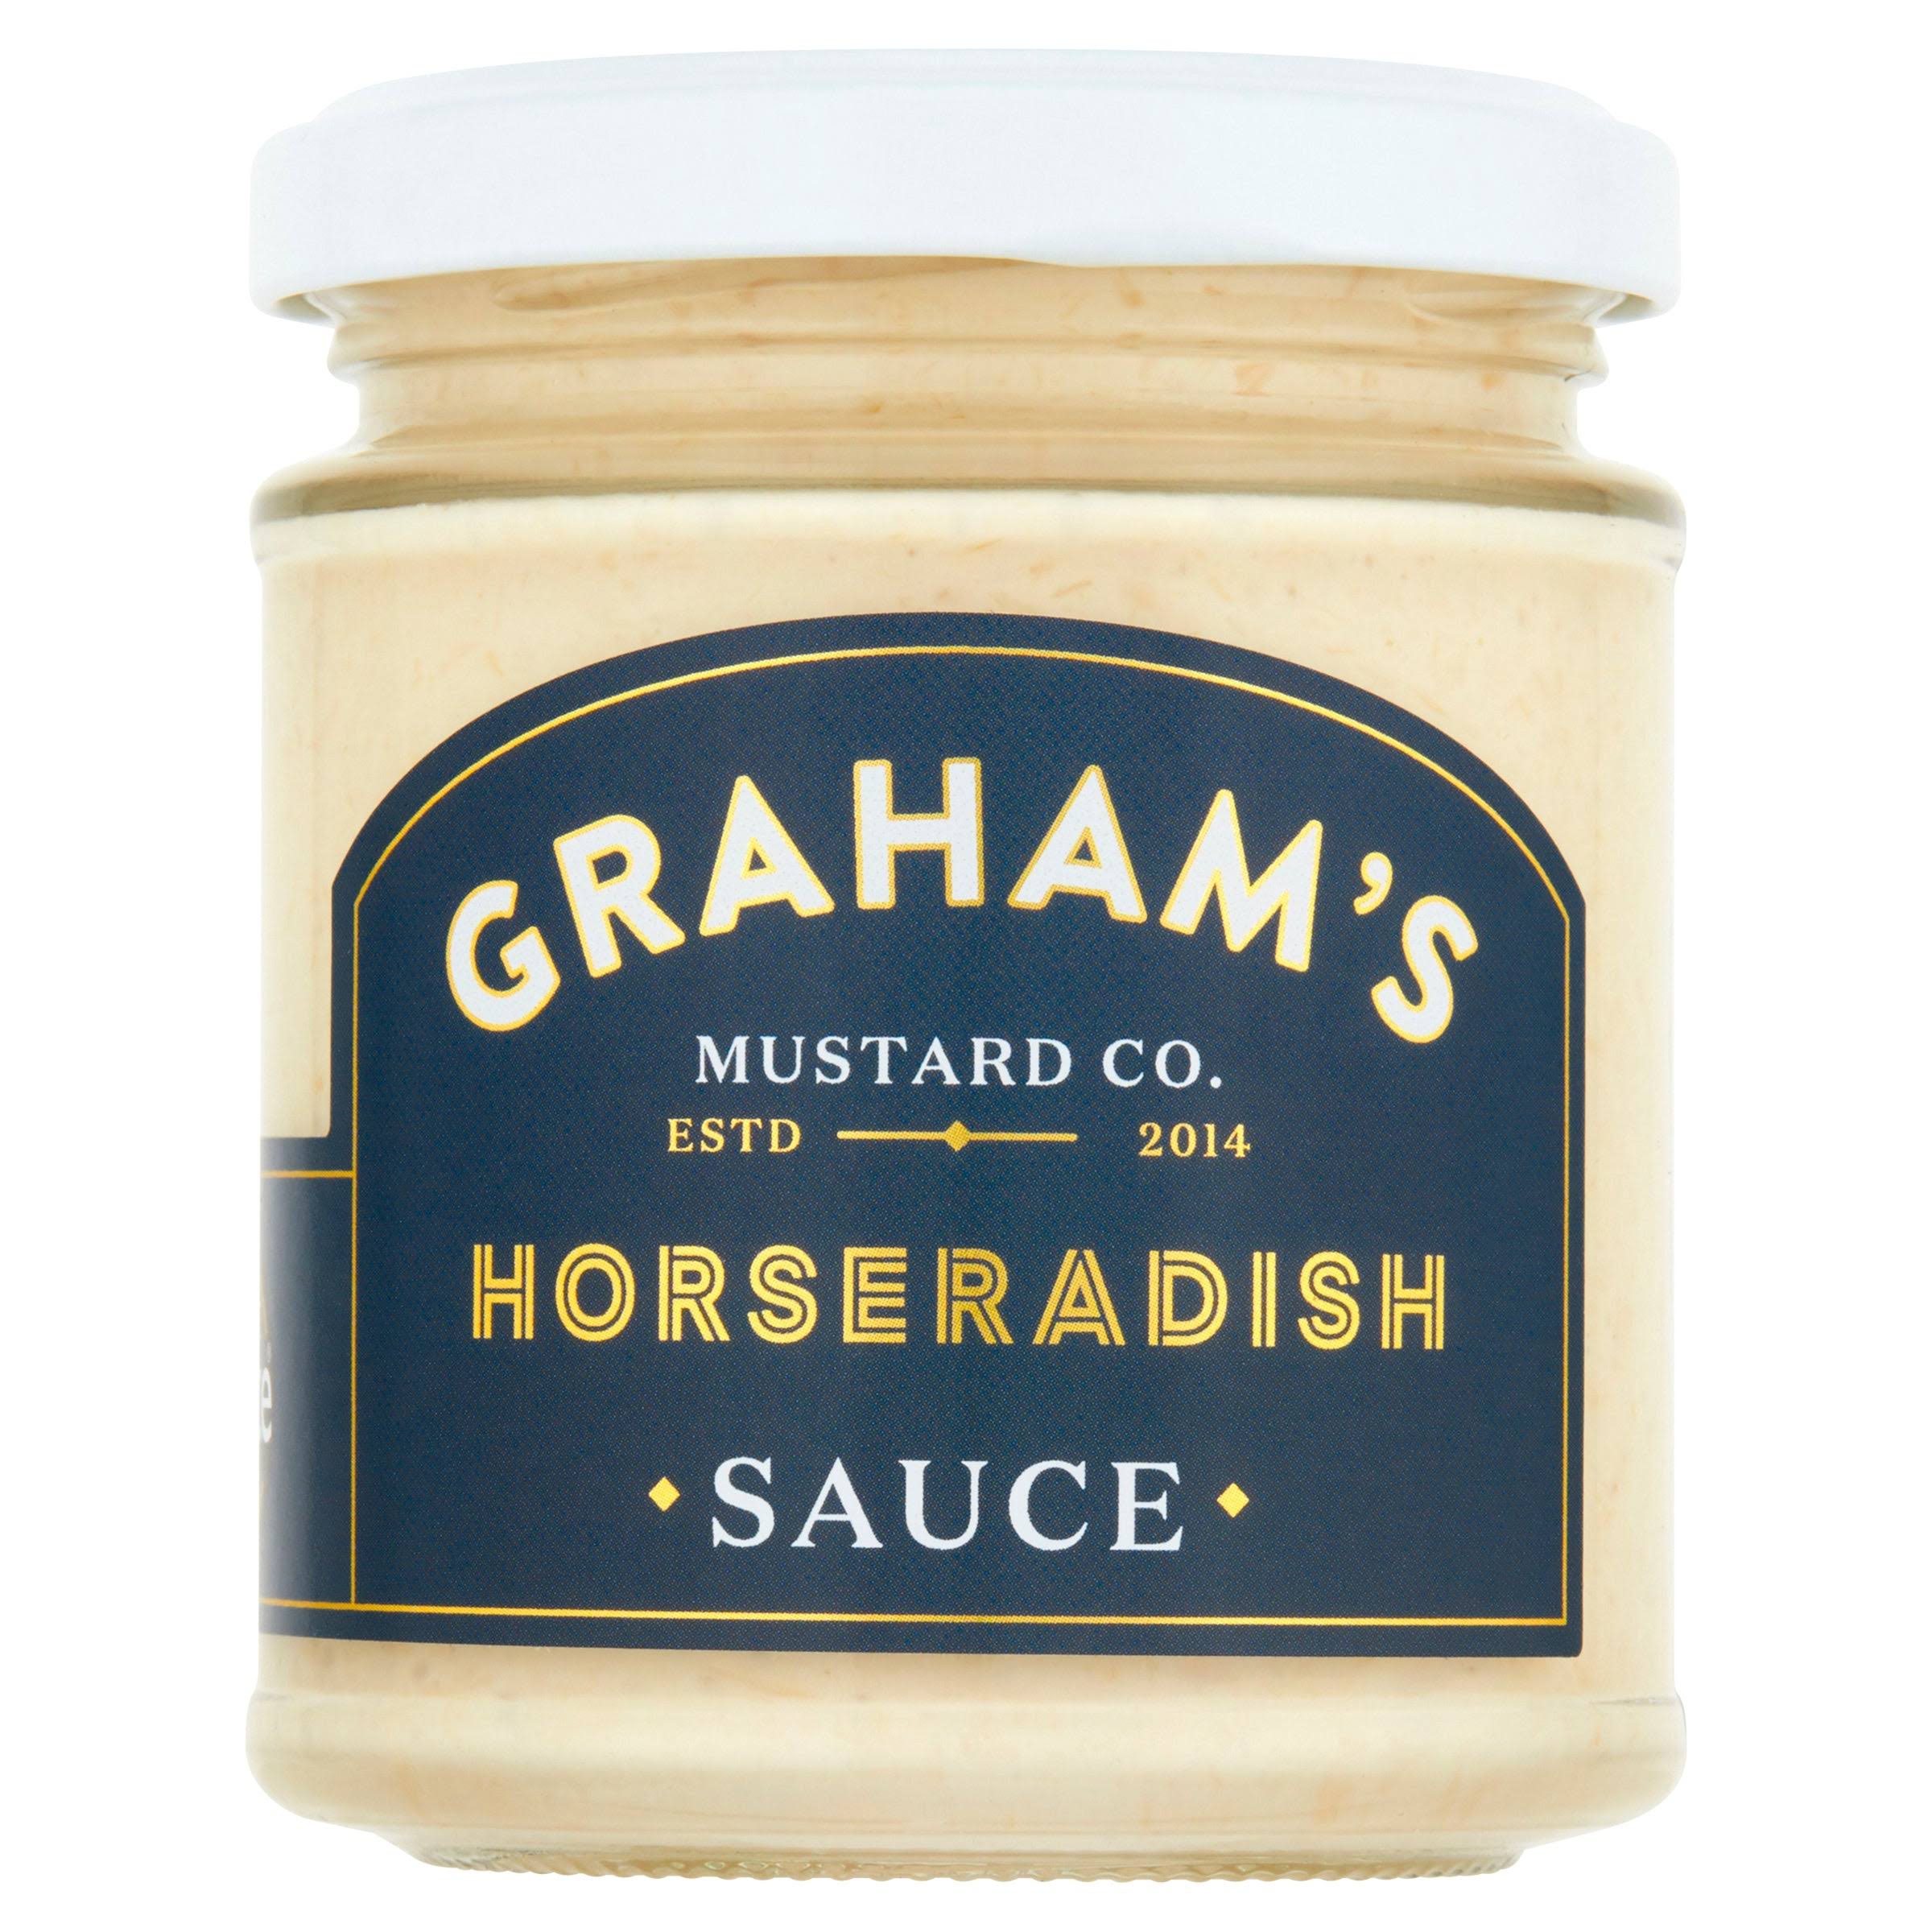 Graham's Horseradish Sauce